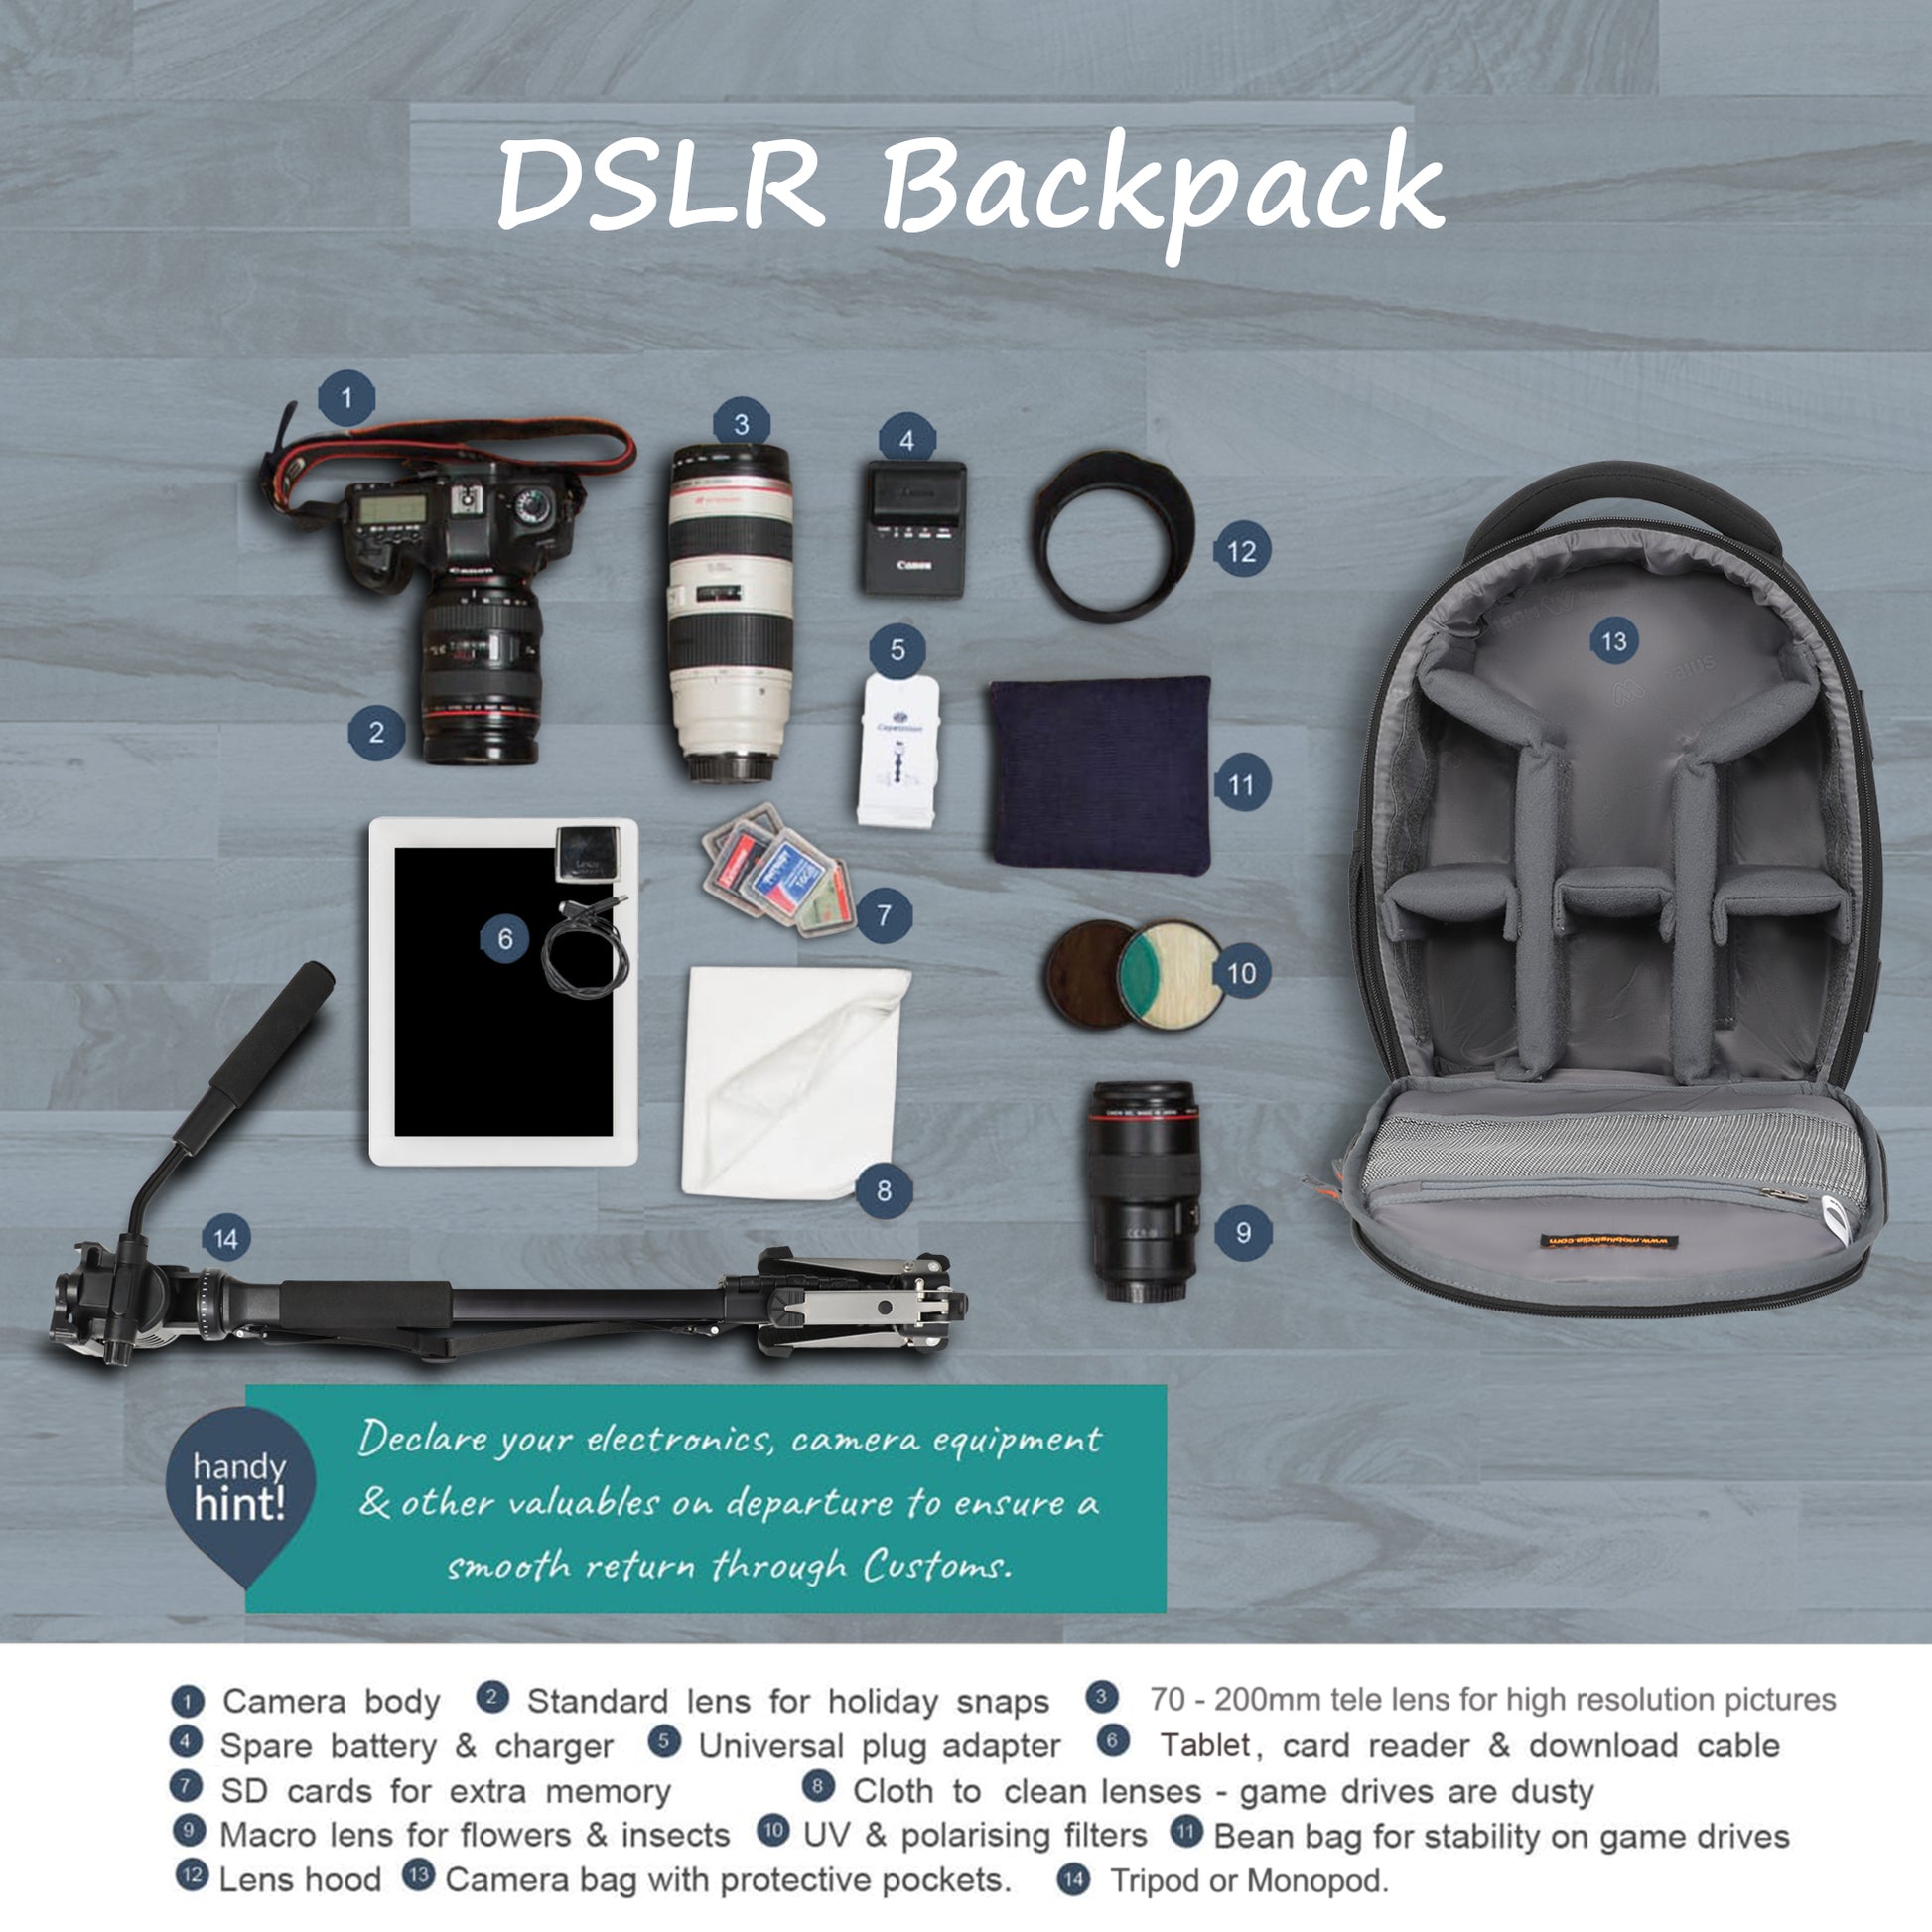 Black B-4 Campro Backpack For Slr, Dslr Cameras And Accessories at Best  Price in Delhi | N K G Enterprises